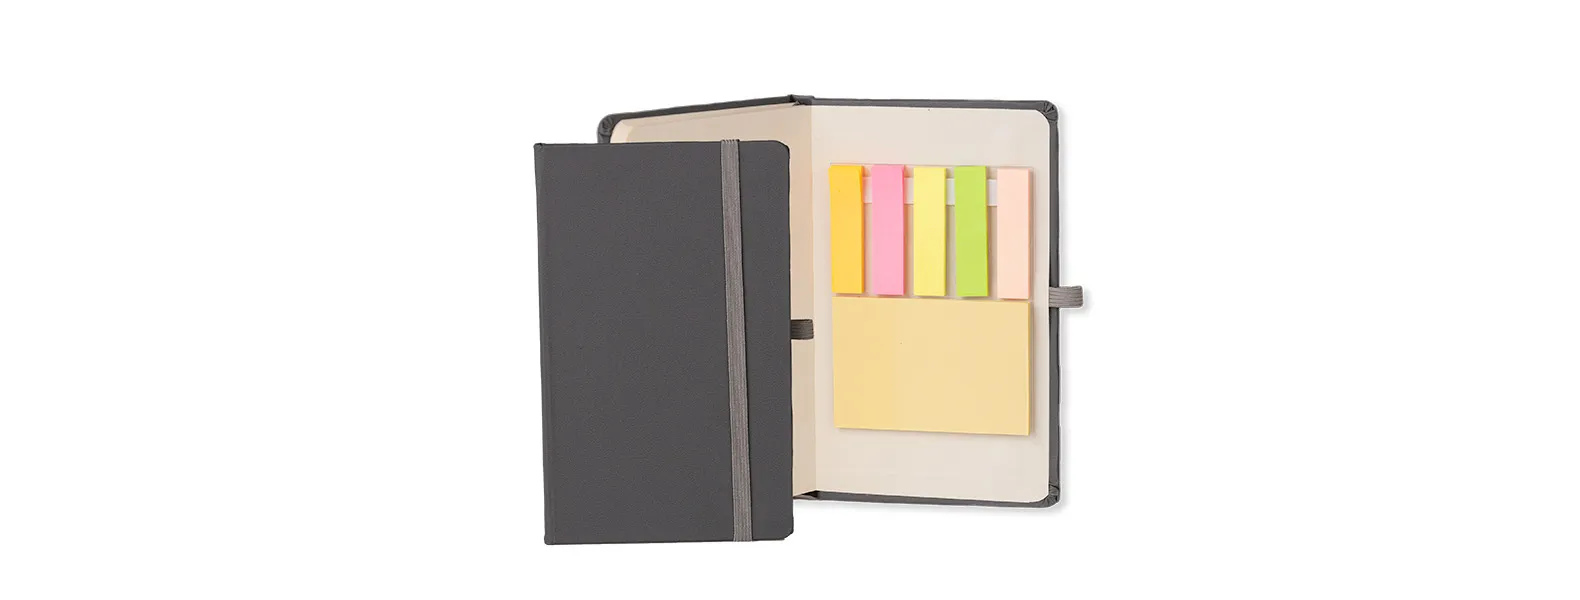 Caderno para anotações com capa dura. Conta com 80 folhas não pautadas, elástico para fechamento e 150 folhas autocolantes em 5 cores. Gramatura da folha de 70 g/m2